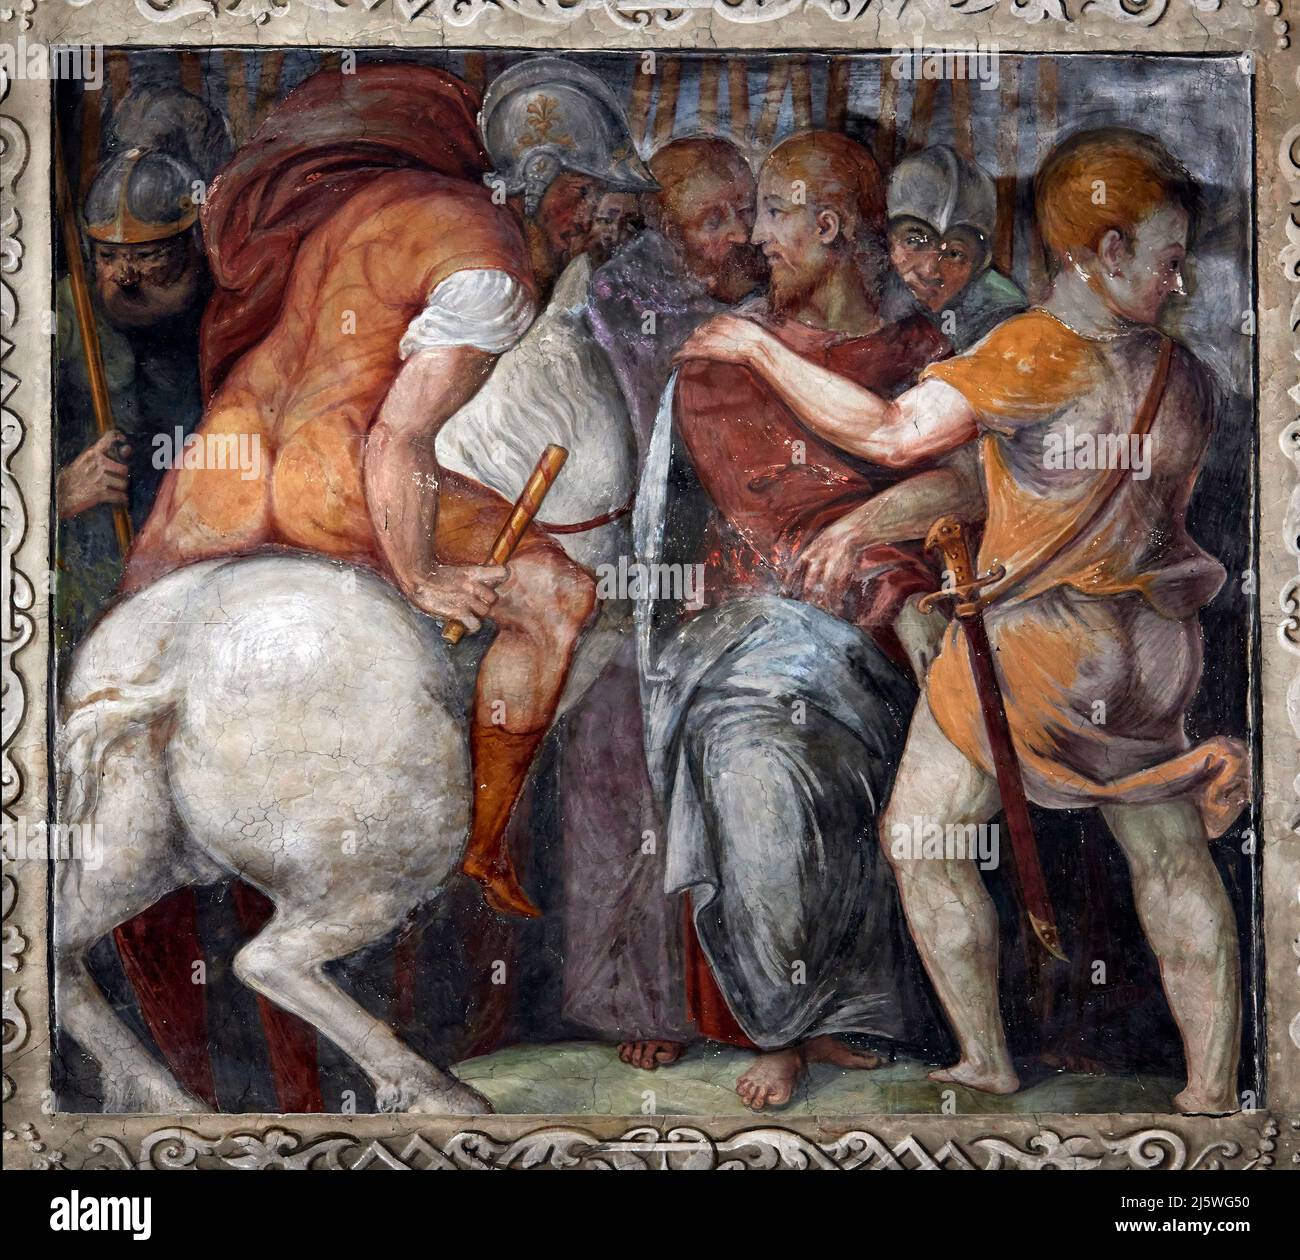 Arresto di Cristo - affresco - Giovanni Pietro da Cemmo - 1498/1504 - Cremona, Italia,chiesa di S. Agostino Stock Photo